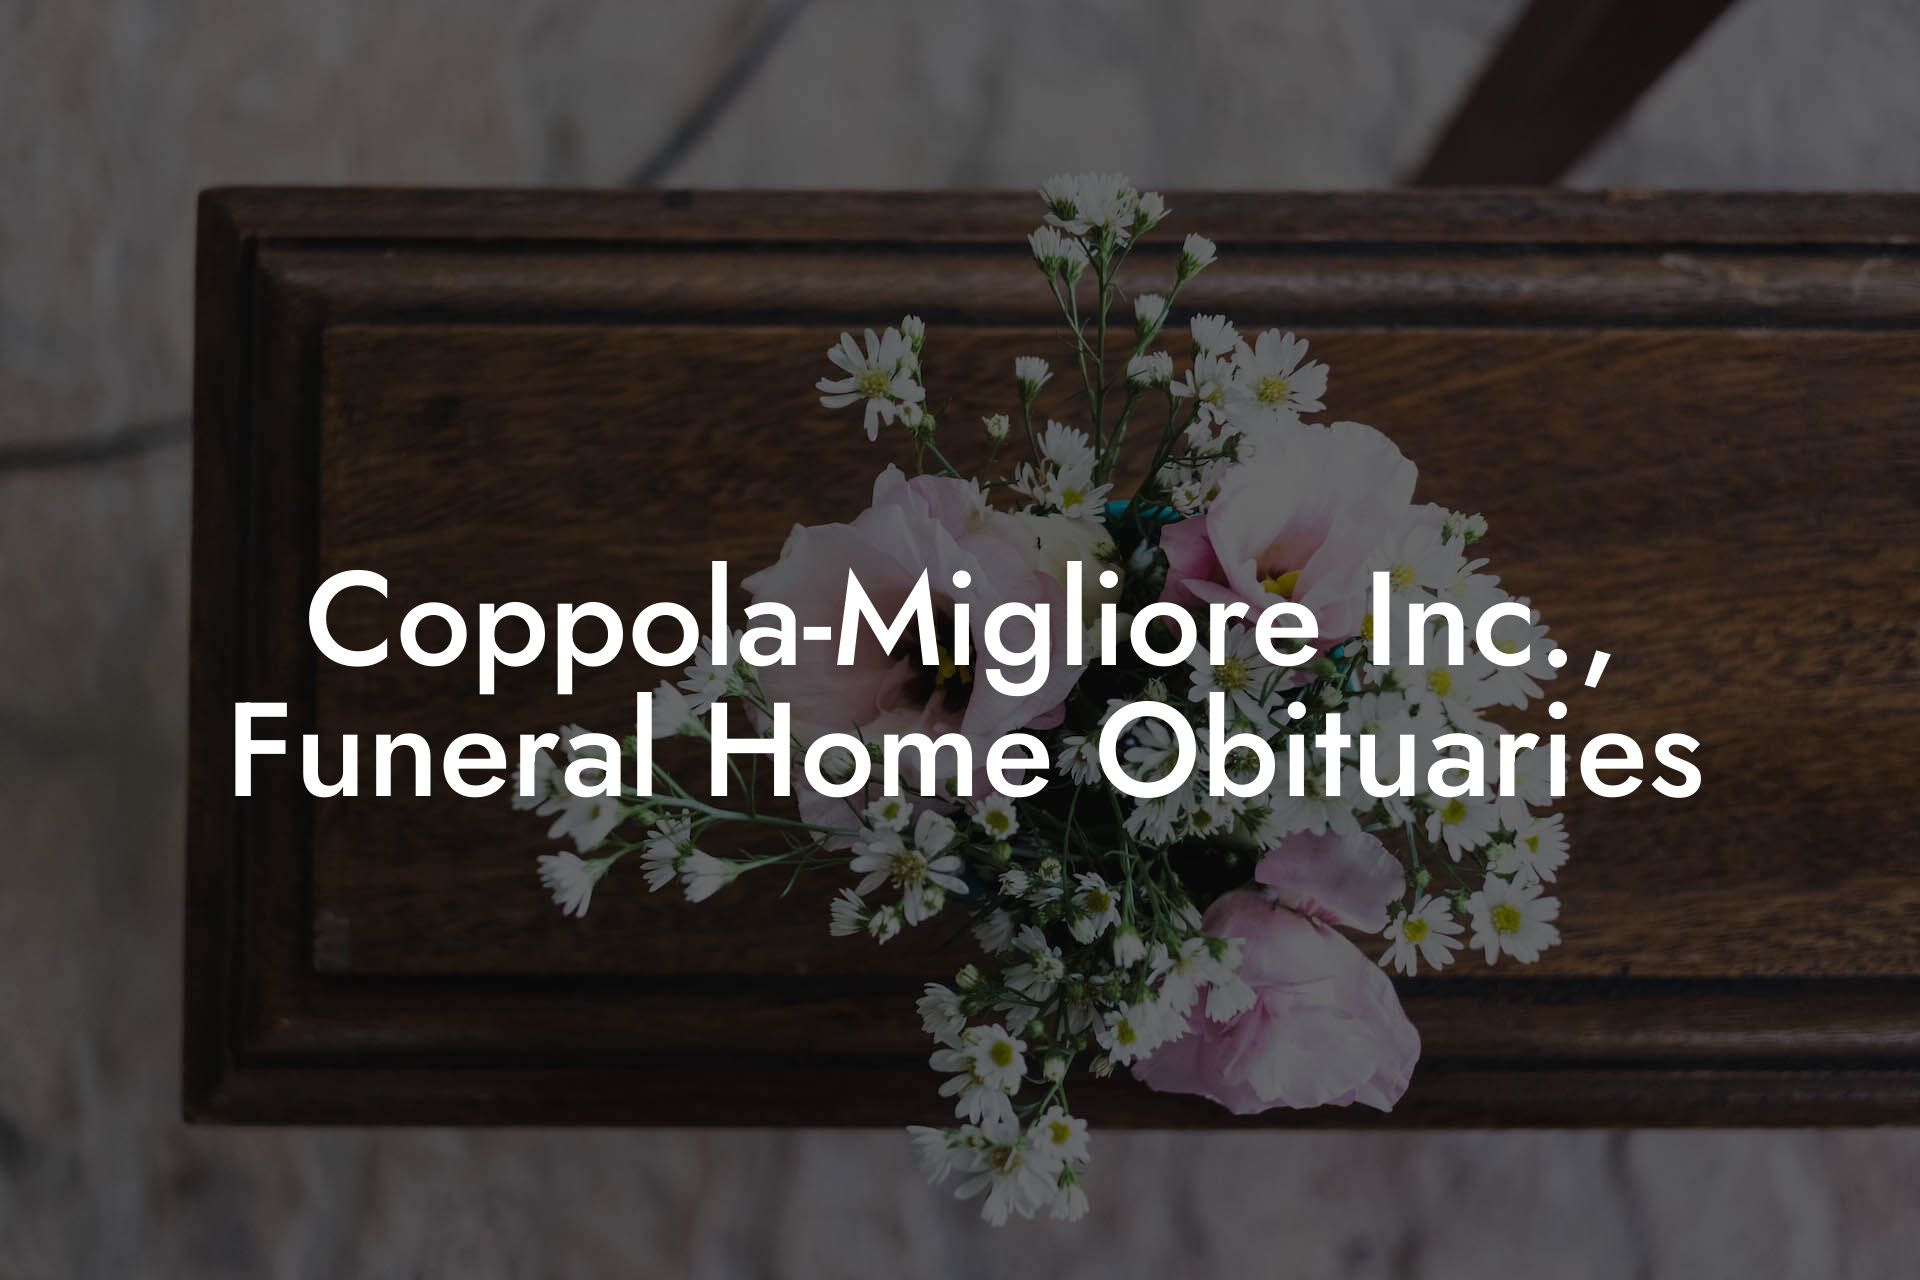 Coppola-Migliore Inc., Funeral Home Obituaries